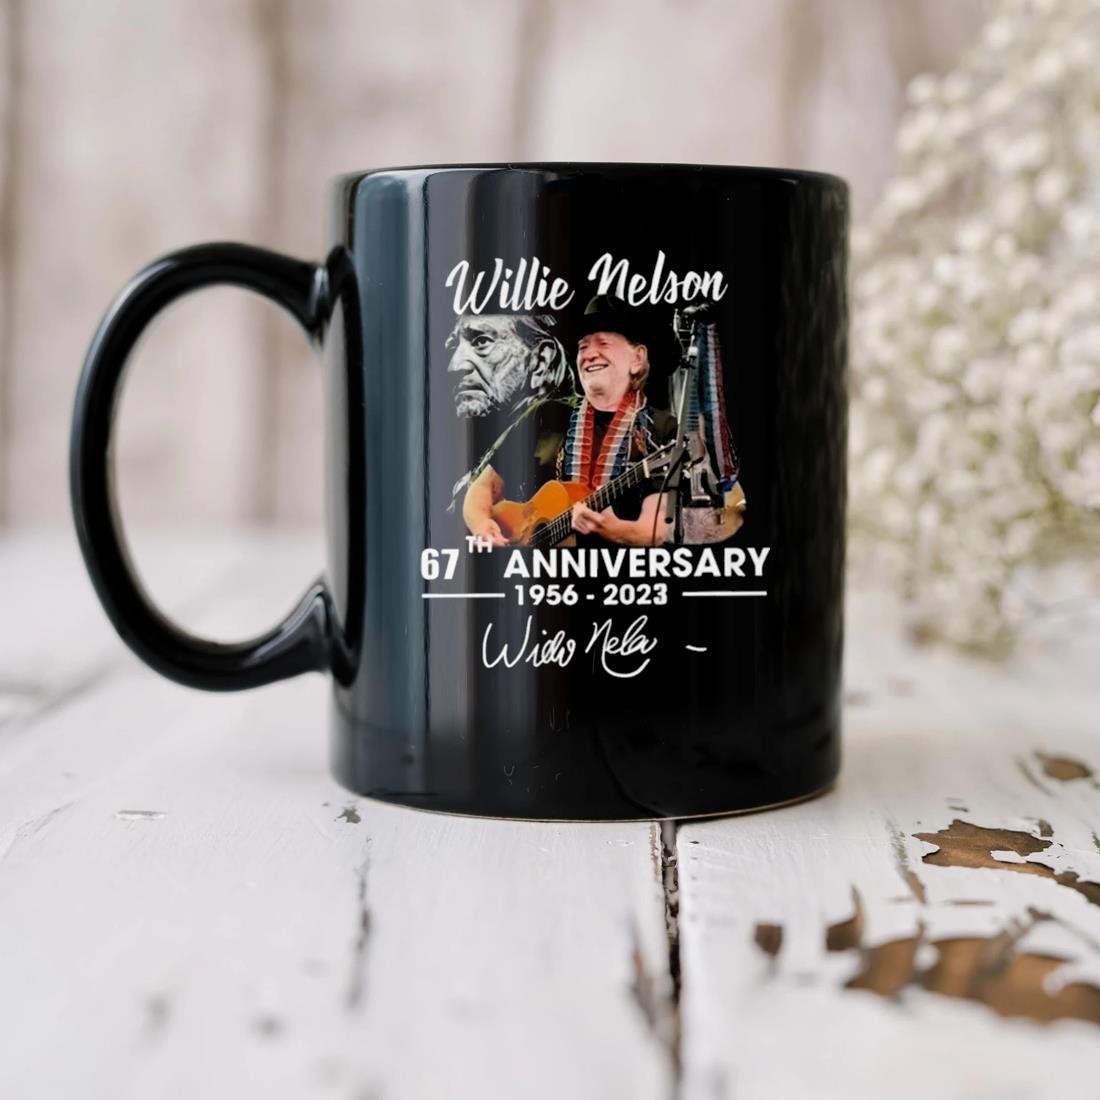 Willie Nelson 67th Anniversary 1956 2023 Signature Mug